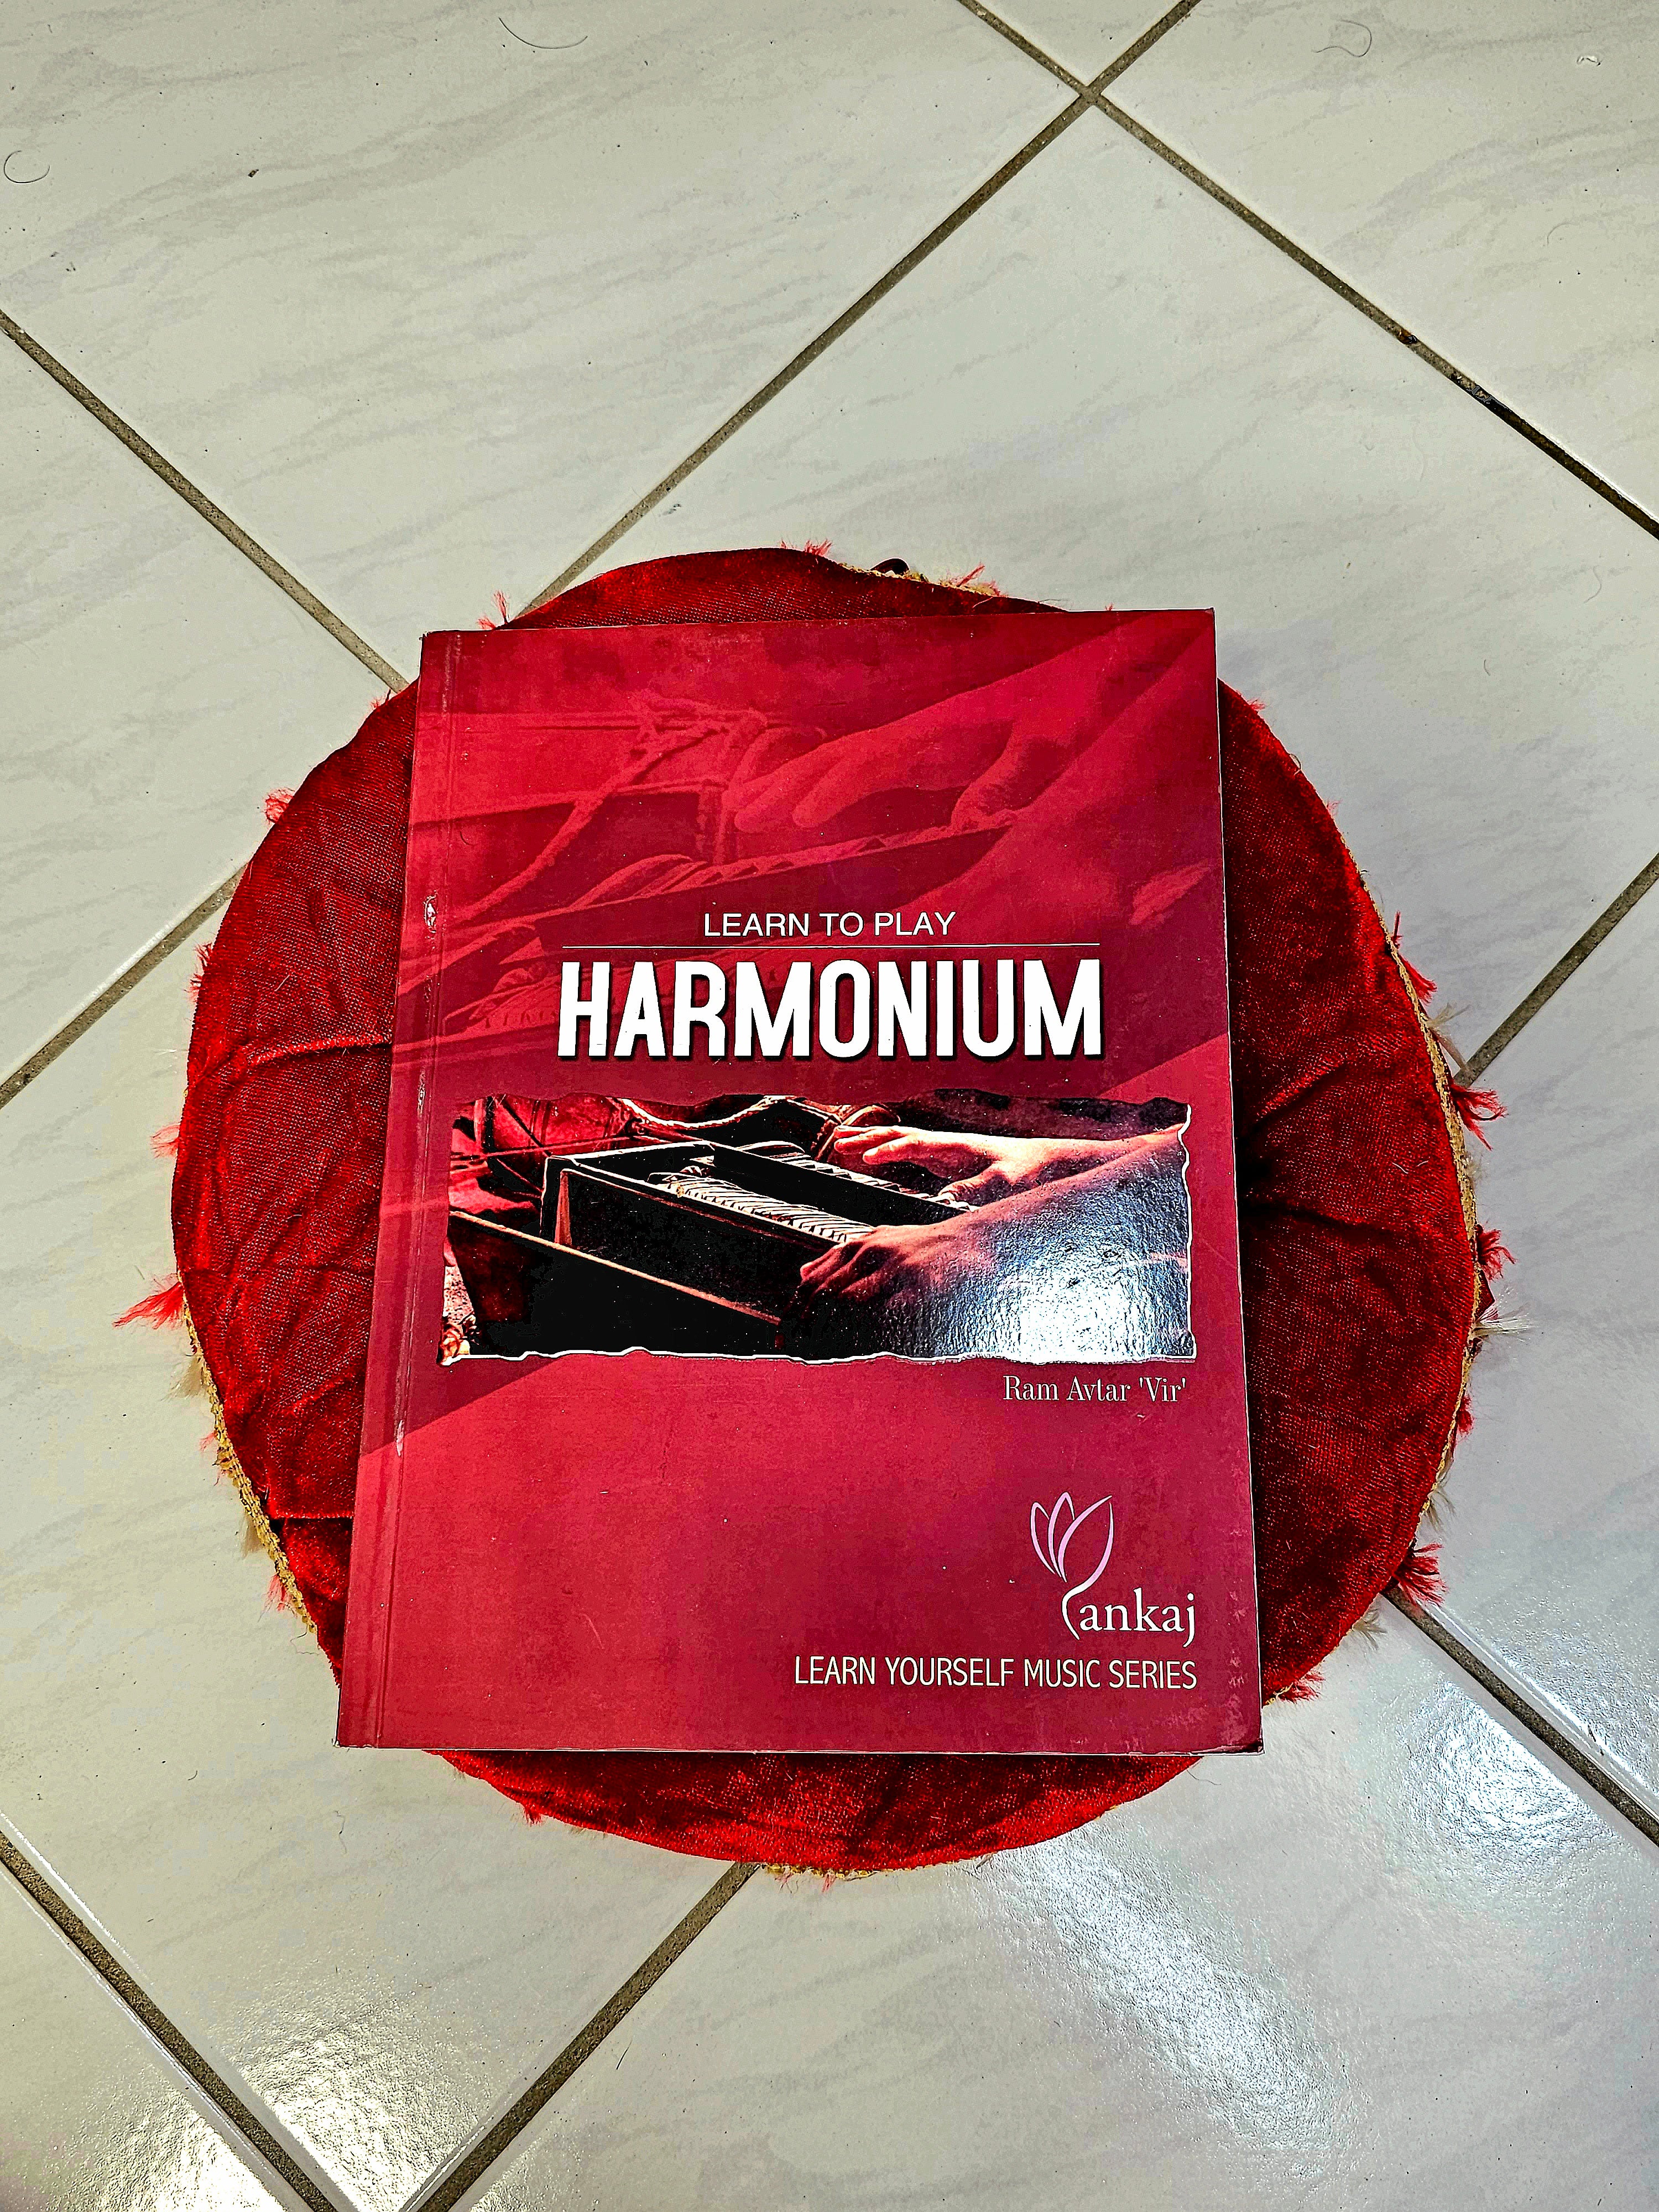 Harmonium Book ("Learn to Play Harmonium" By: Ram Avtar 'Vir')